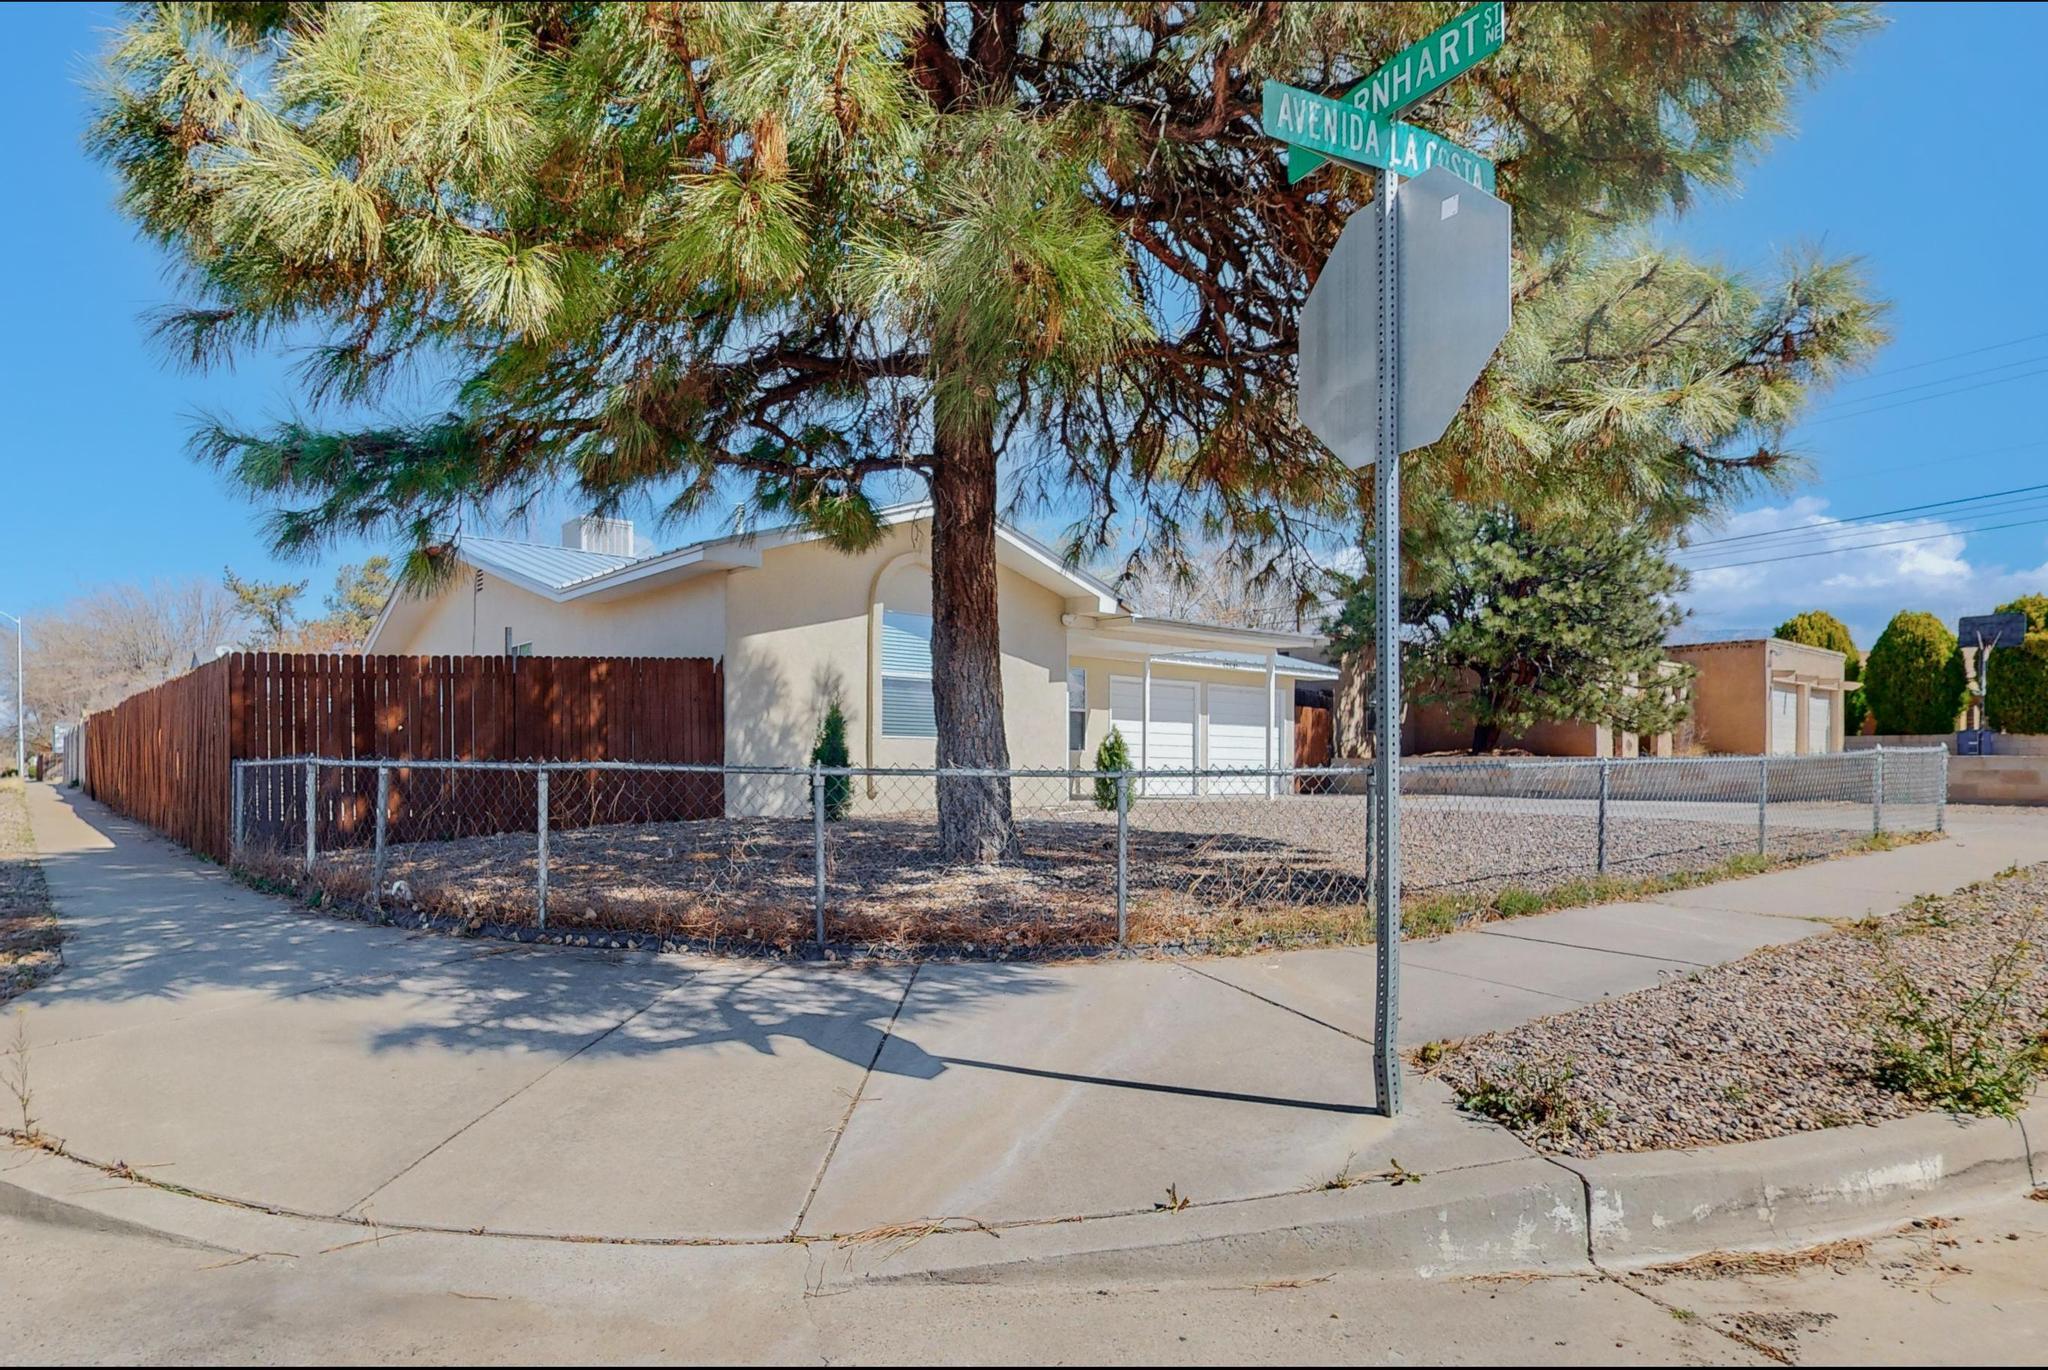 6201 Avenida La Costa NE, Albuquerque, New Mexico 87109, 3 Bedrooms Bedrooms, ,2 BathroomsBathrooms,Residential,For Sale,6201 Avenida La Costa NE,1060779